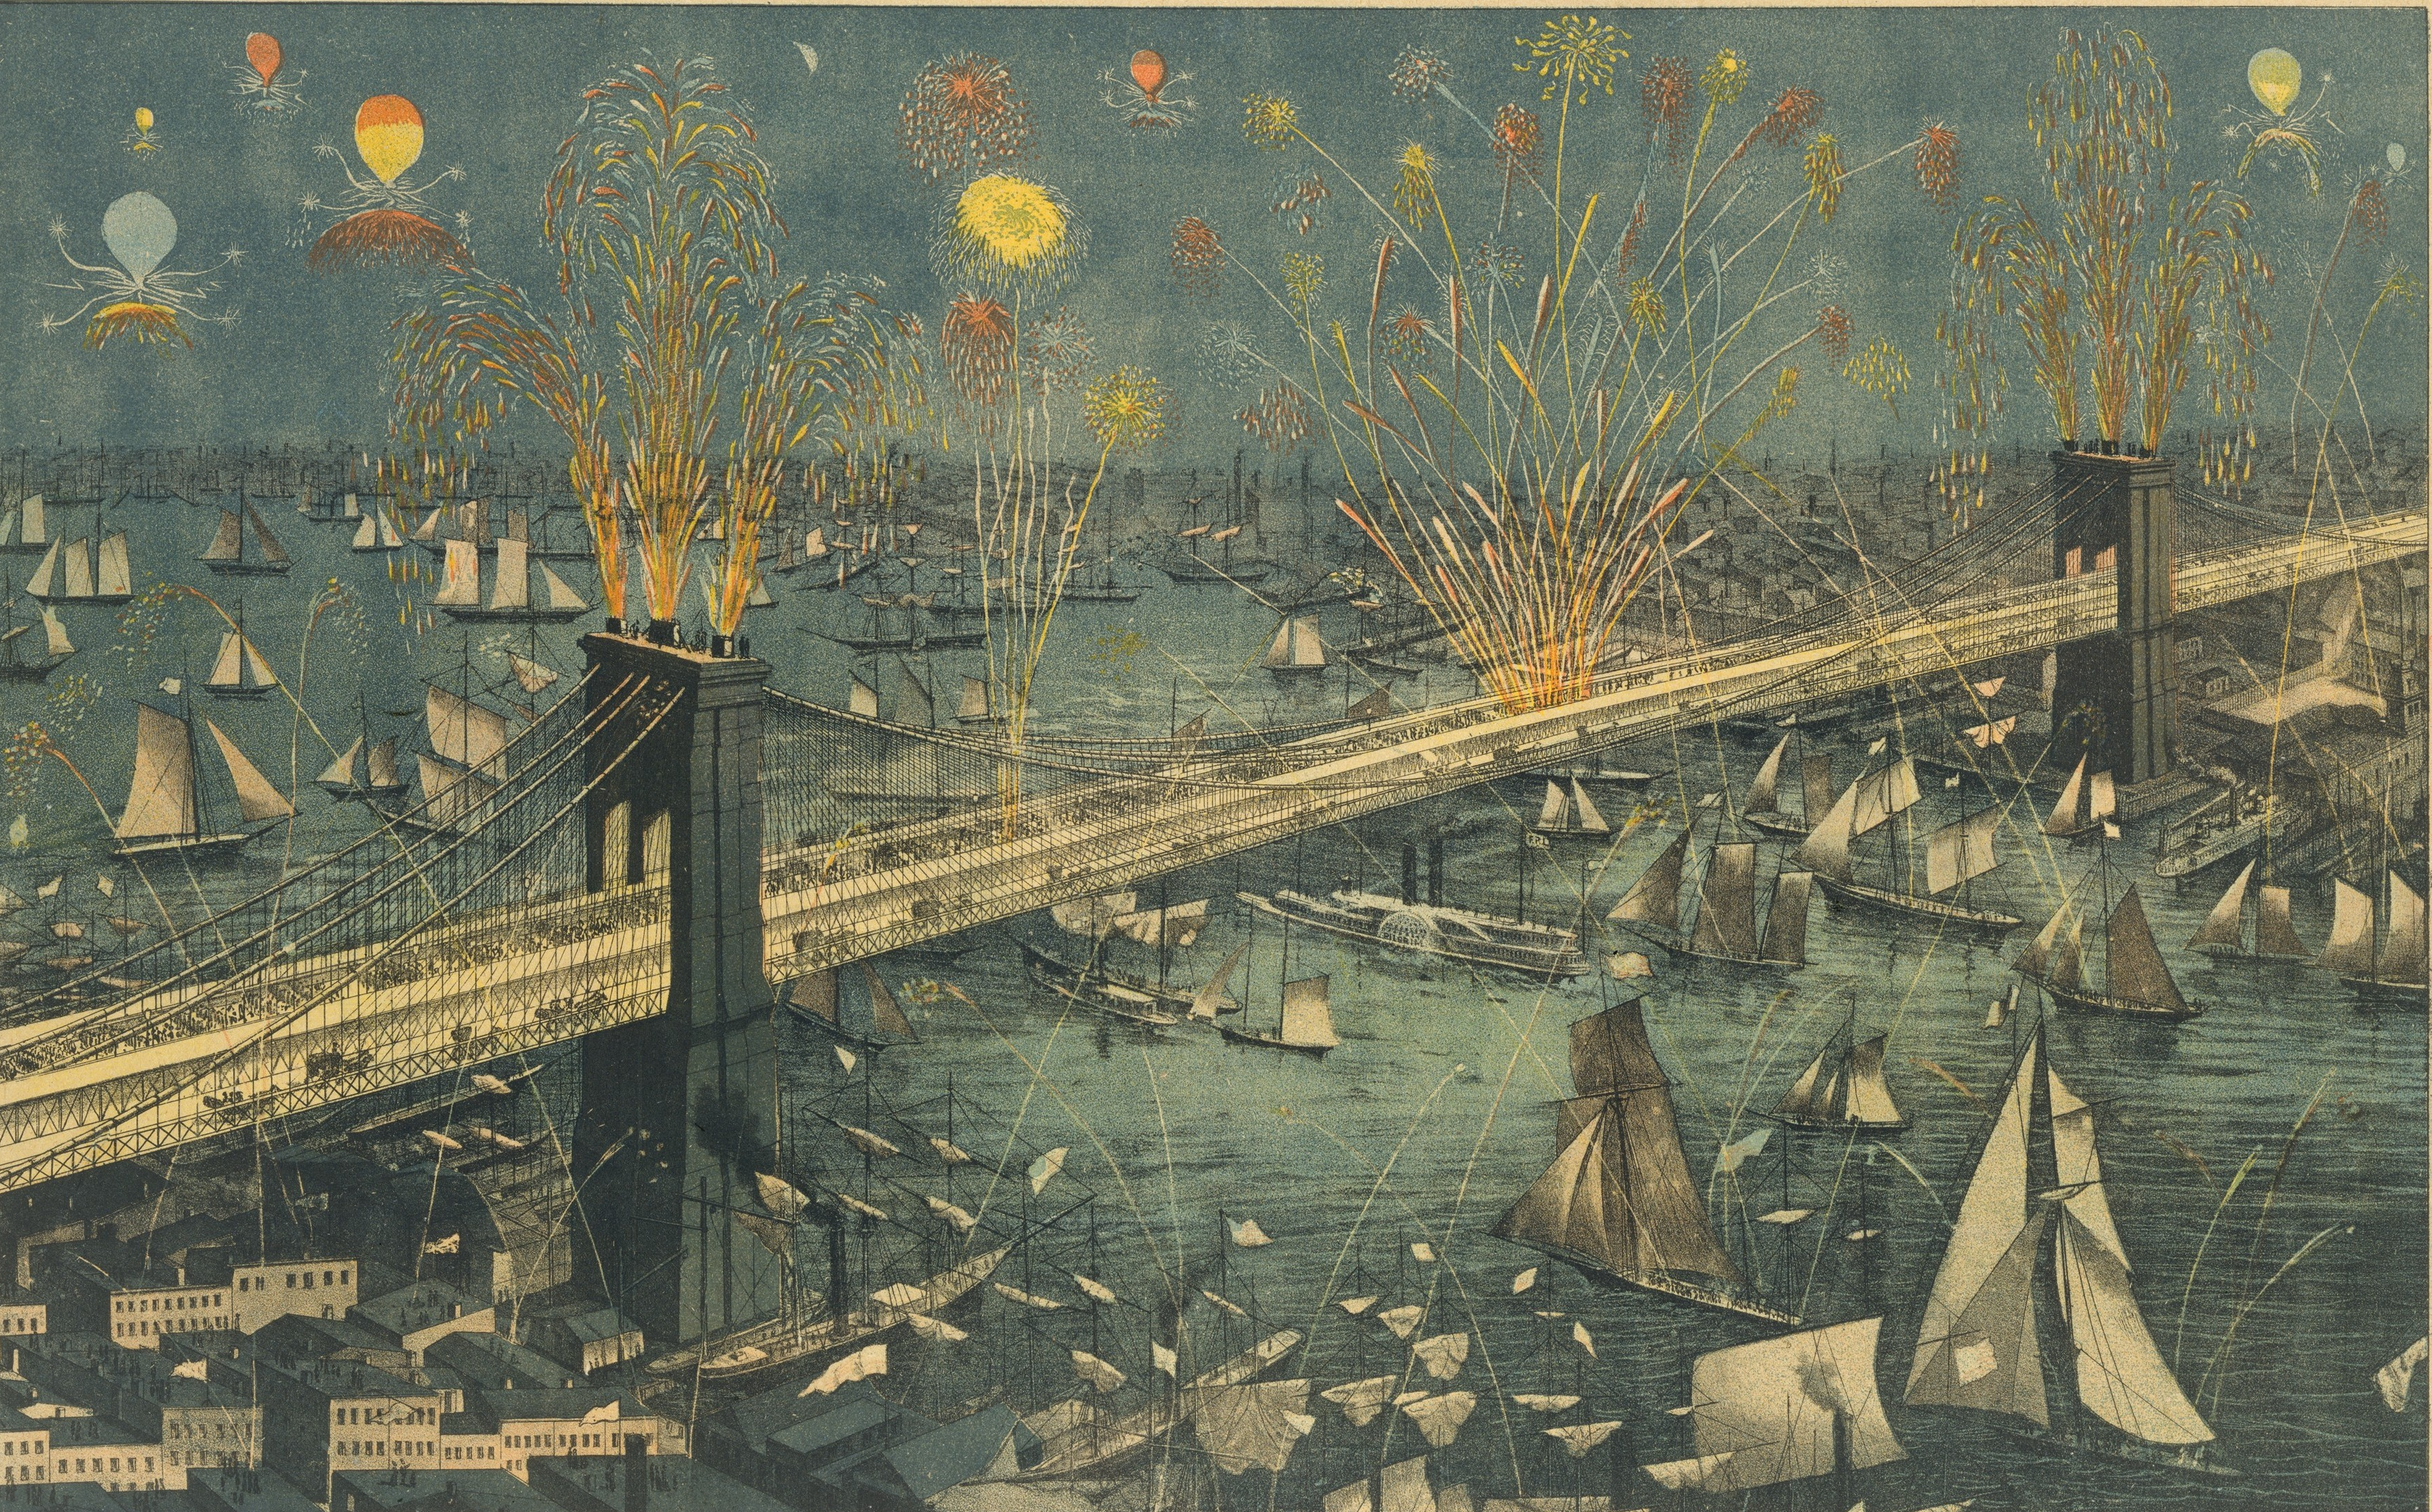 Muhteşem New York ve Brooklyn Köprüsü'nün Manzarası, Açılış Gecesinde Havai Fişek Gösterisi (orig. "View of the Great New York and Brooklyn Bridge, Display of Fireworks on Opening Night") by Bilinmeyen Sanatçı - 1883 - 38.9 x 62.4 cm 